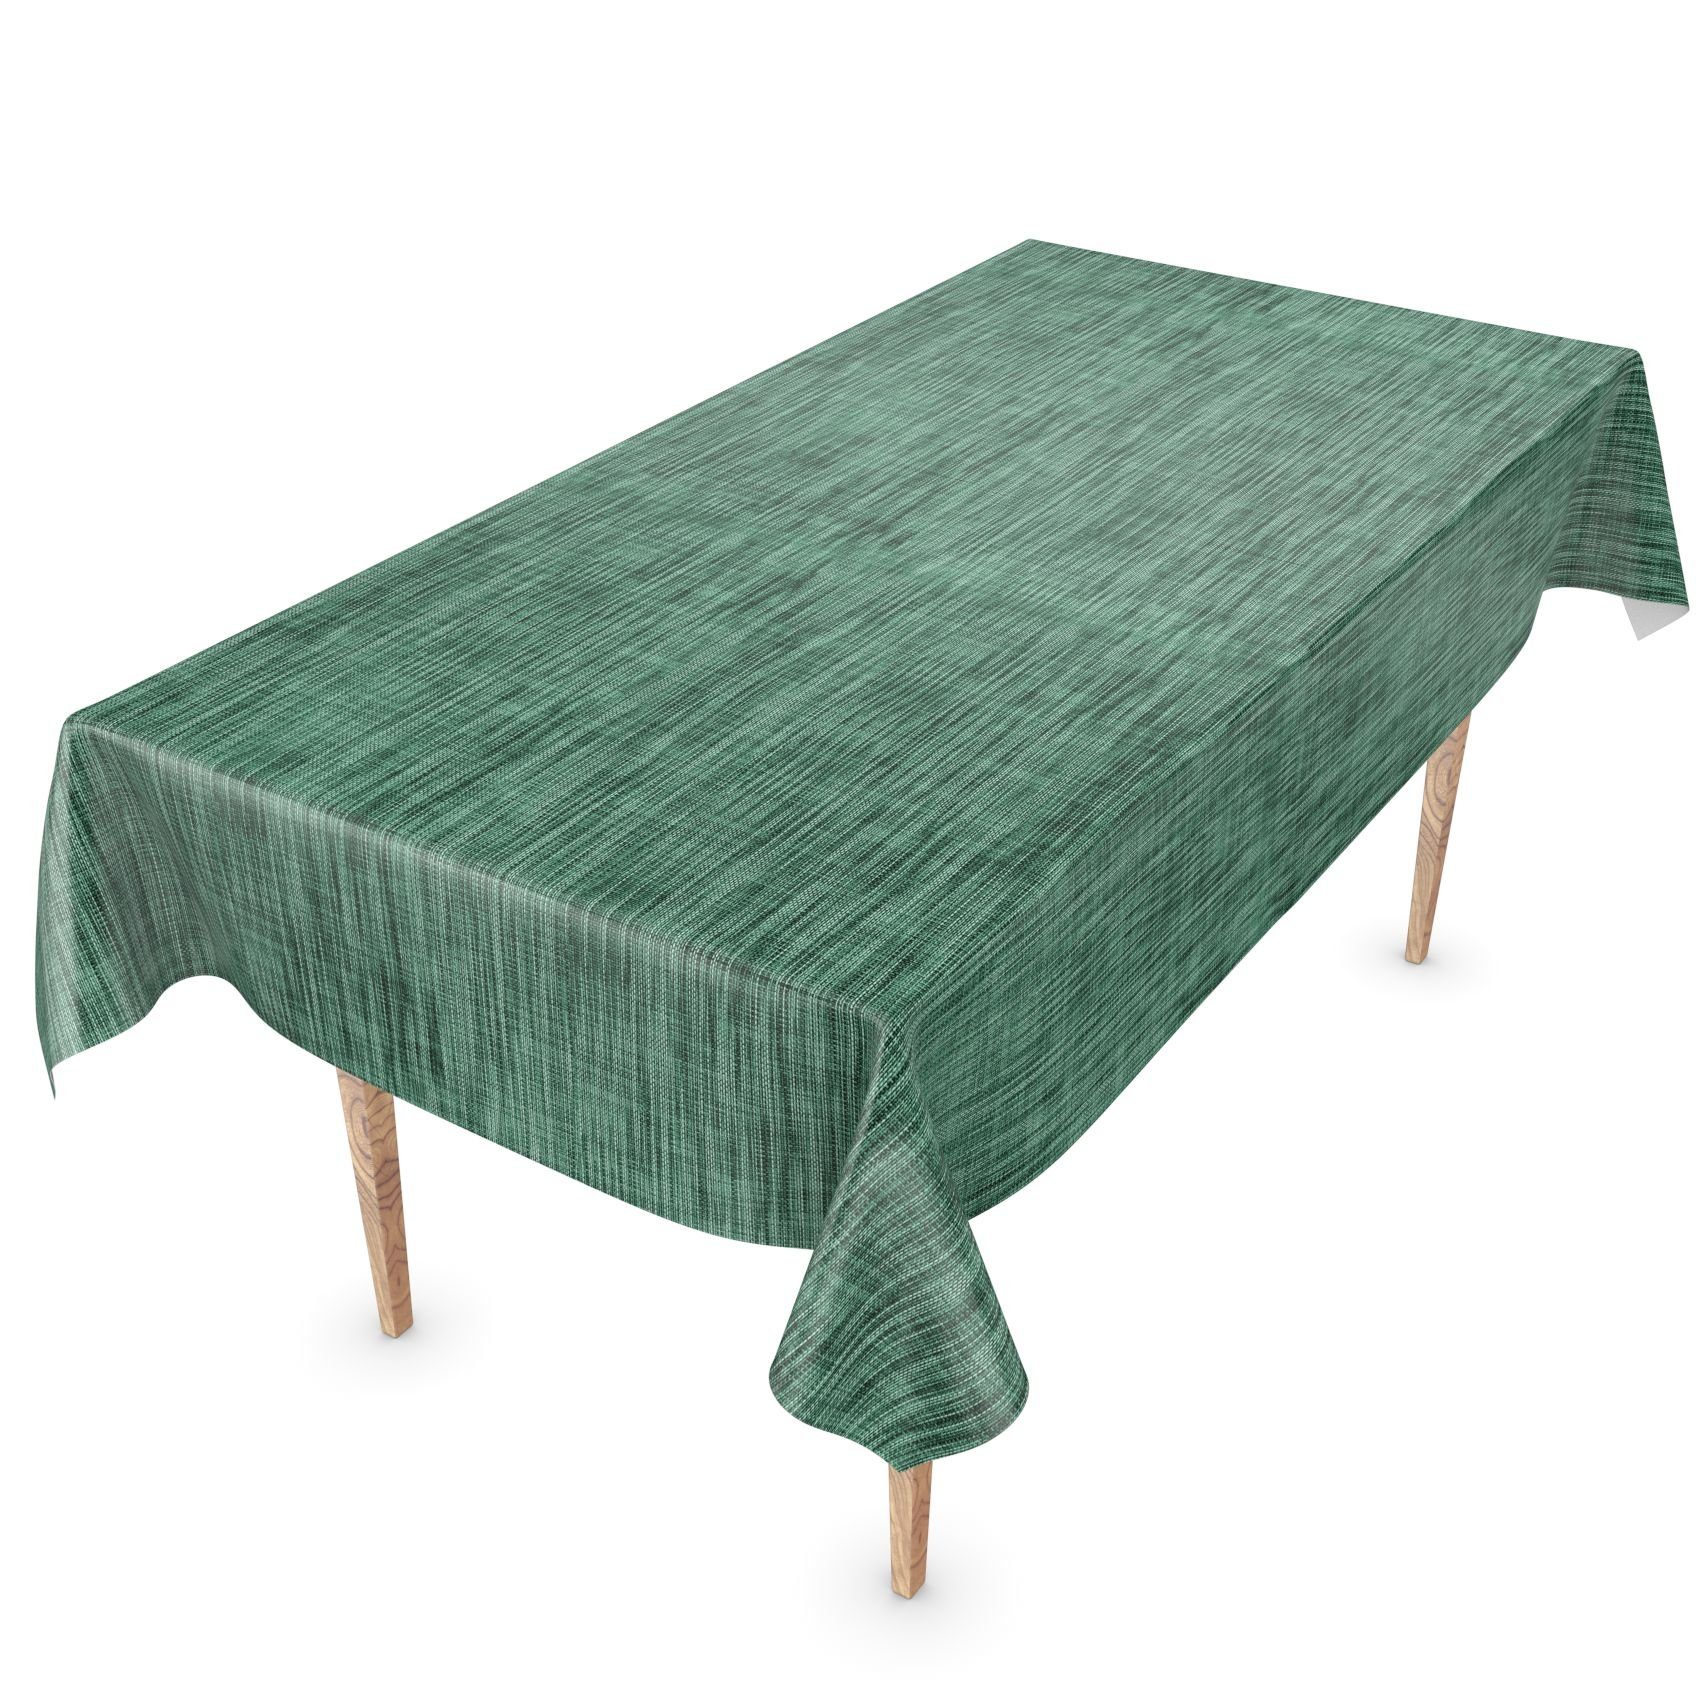 ANRO Tischdecke Tischdecke Wachstuch Einfarbig Grün Robust Wasserabweisend Breite 140, Glatt